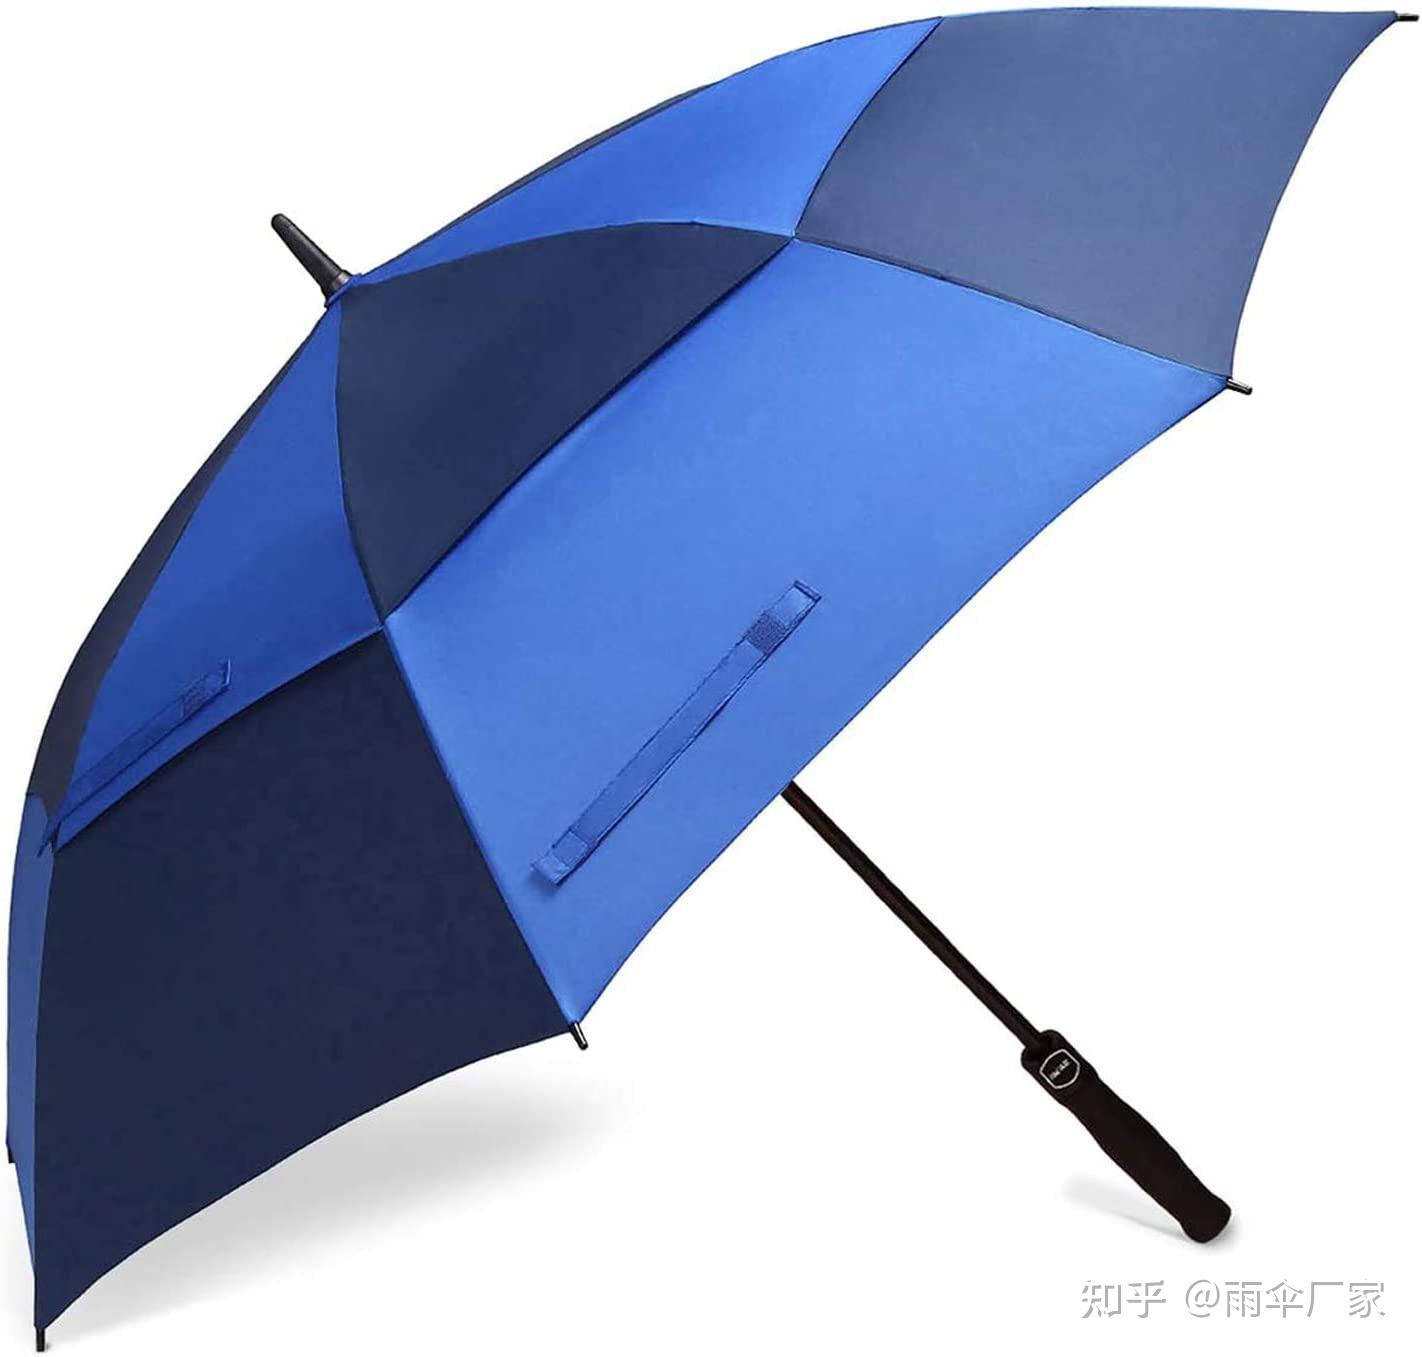 晴雨伞,太阳伞,雨伞,防风伞,自动伞,遮阳伞,黑胶伞,胶囊伞